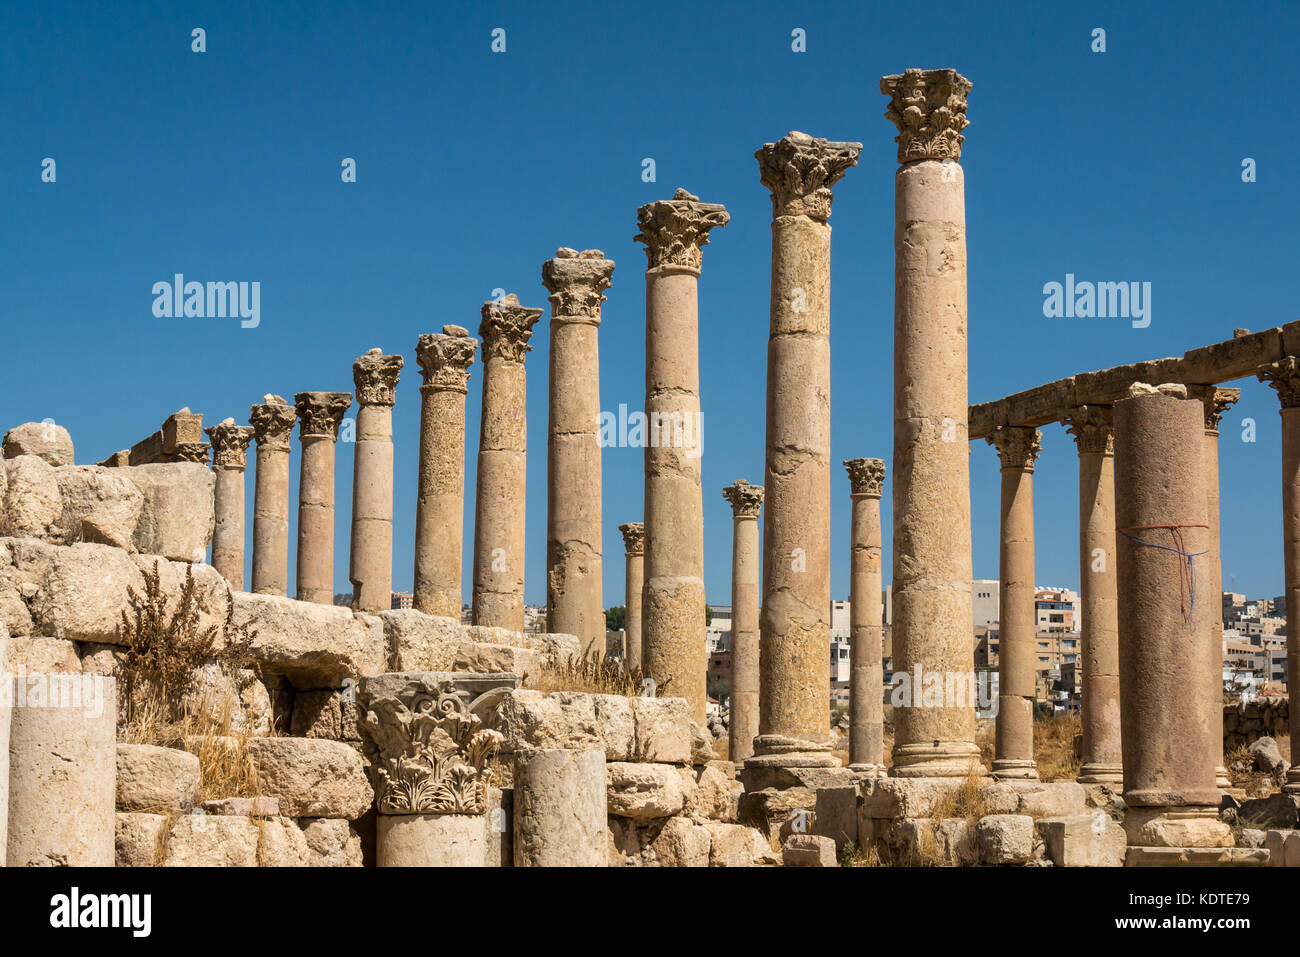 Cardo con colonne corinzie, città romana di Jerash, antica Gerasa, sito archeologico e di attrazione turistica, Giordania, Medio Oriente Foto Stock